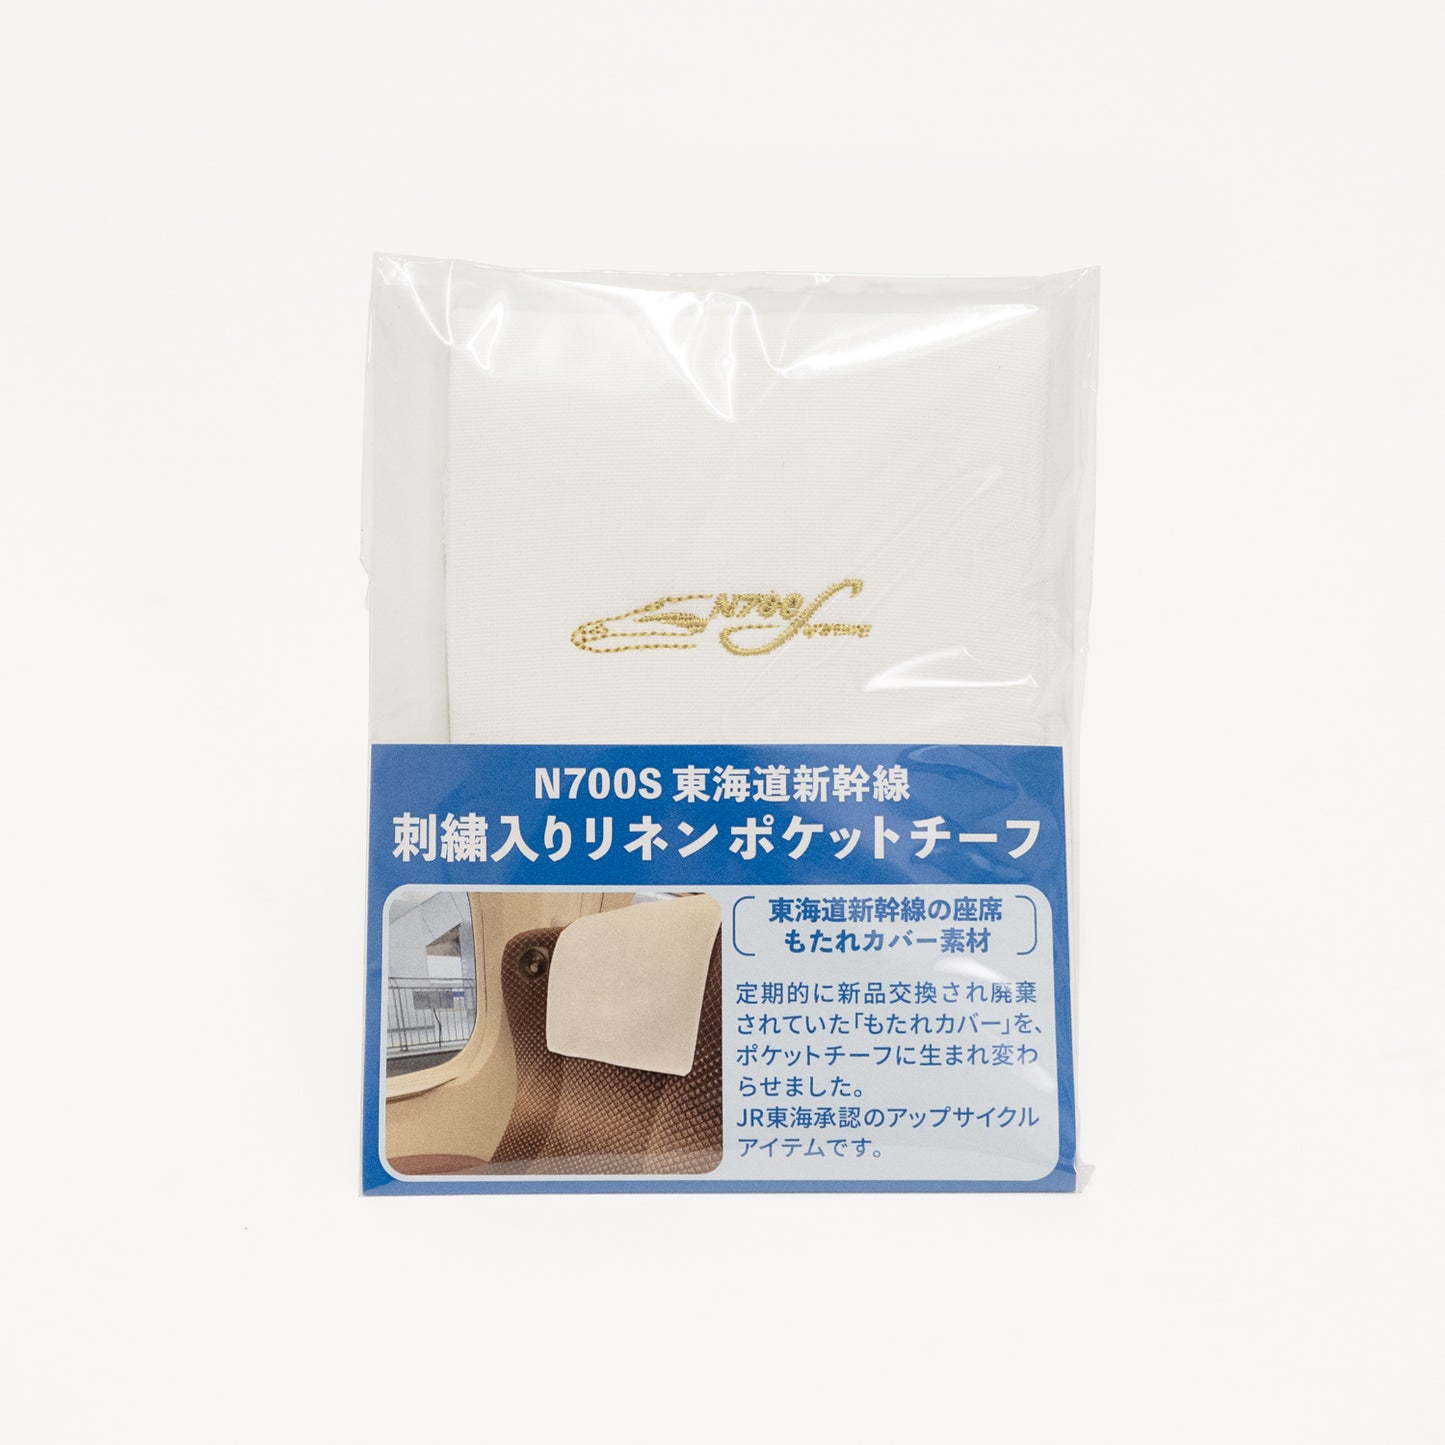 N700S Tokaido Shinkansen Embroidered Linen Pocket Square_No.8701577